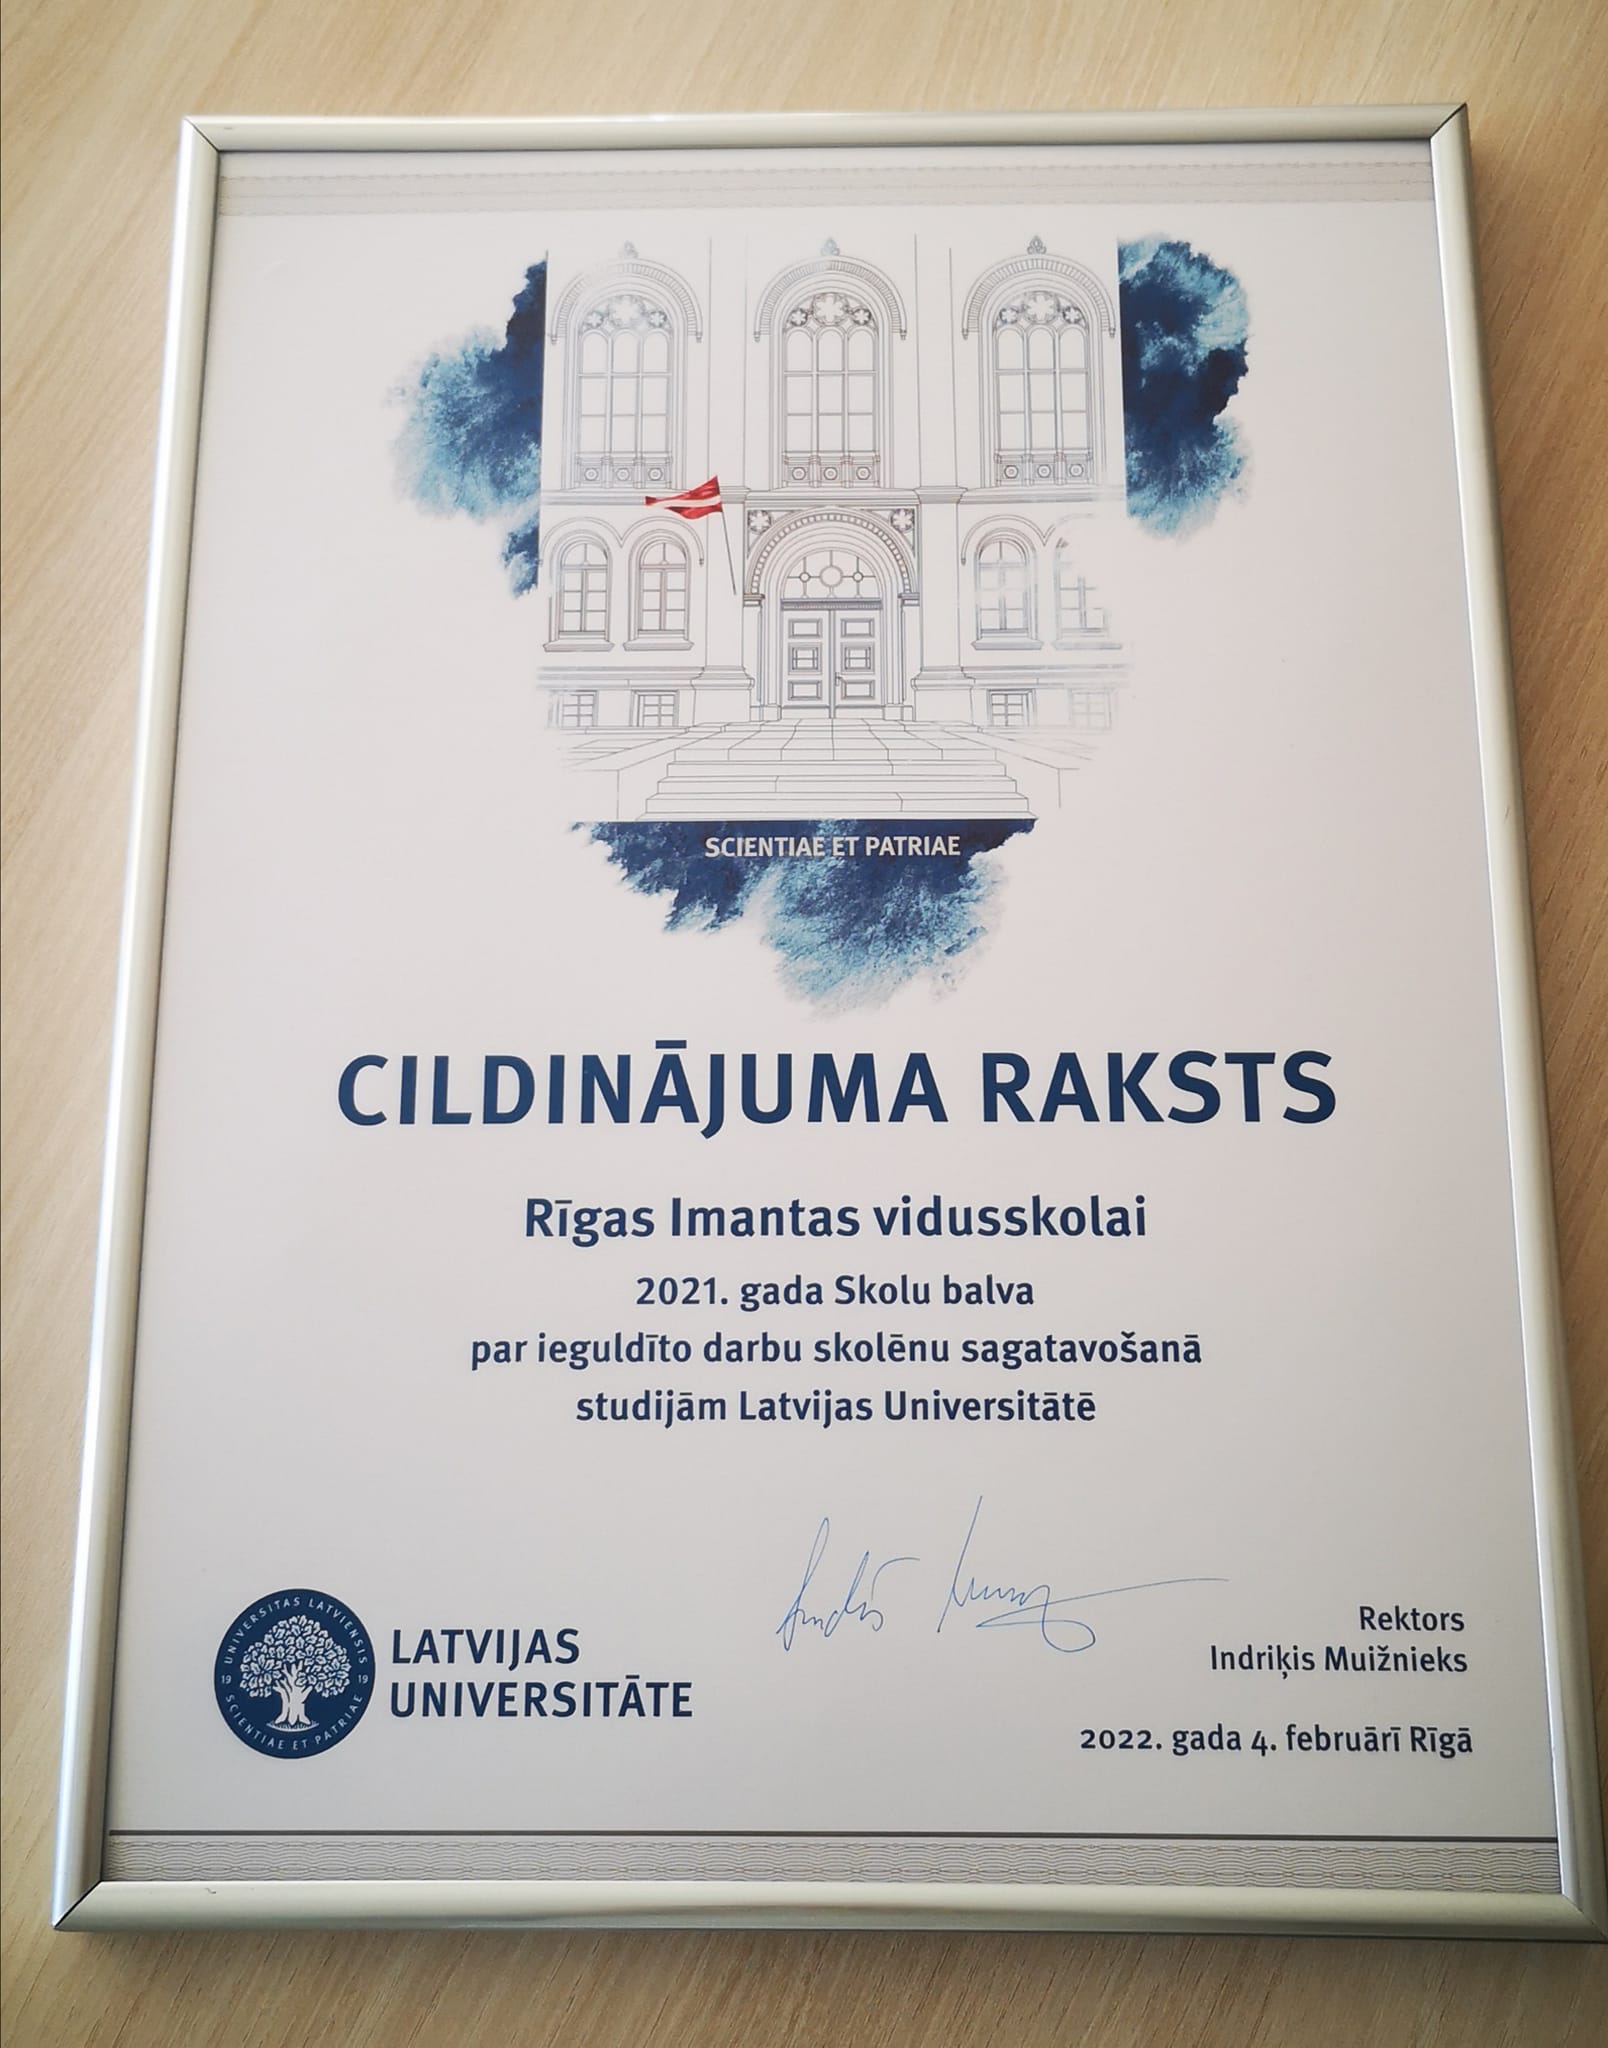 Rīgas Imantas vidusskola saņem Latvijas Universitātes GADA BALVU